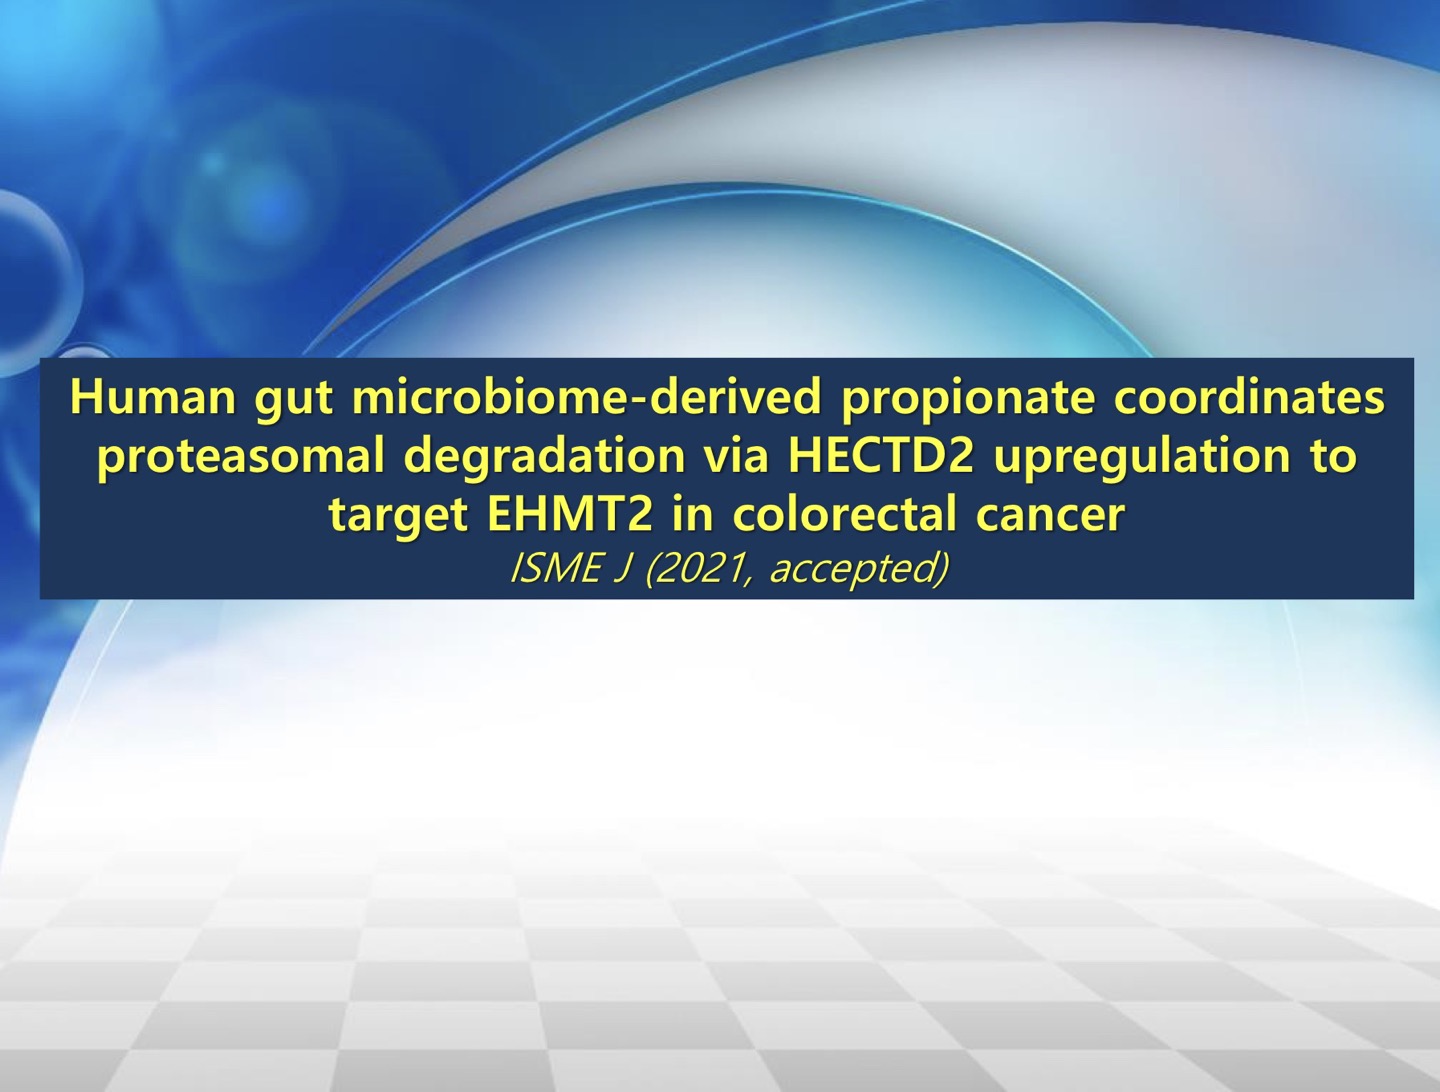 연제 : New Colon Cancer Therapy by Human Microbiome via Epigenetic Machinery_1